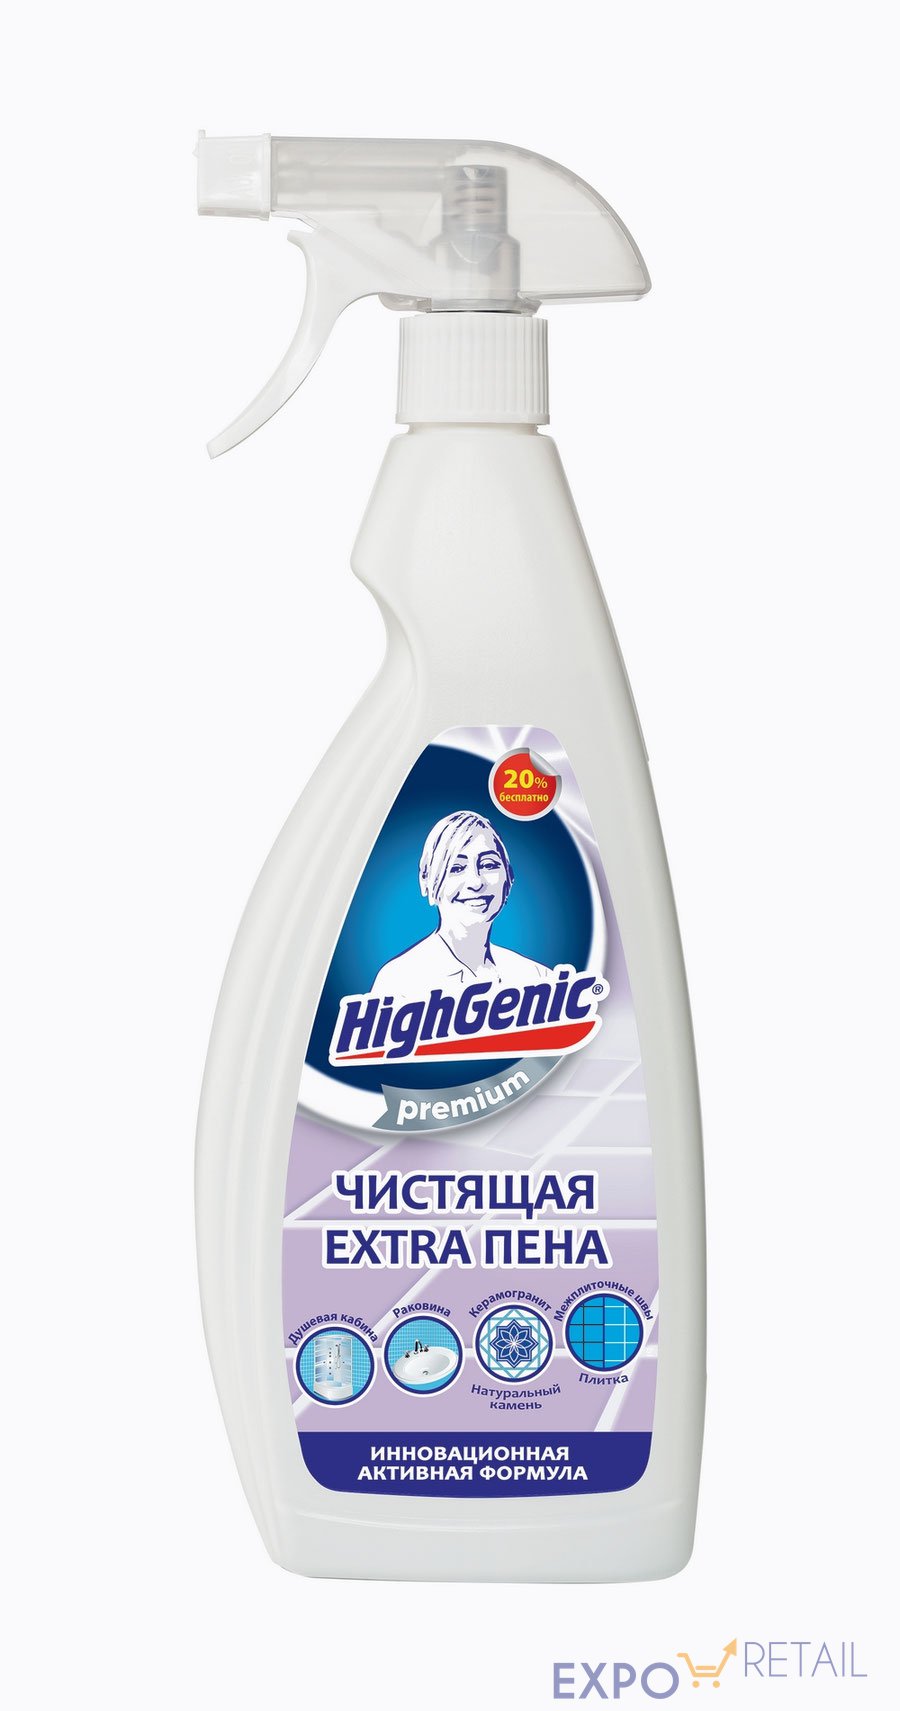 HighGenic Premium Чистящая Extra пена для всех поверхностей в ванной комнате, плитки и межплиточных швов